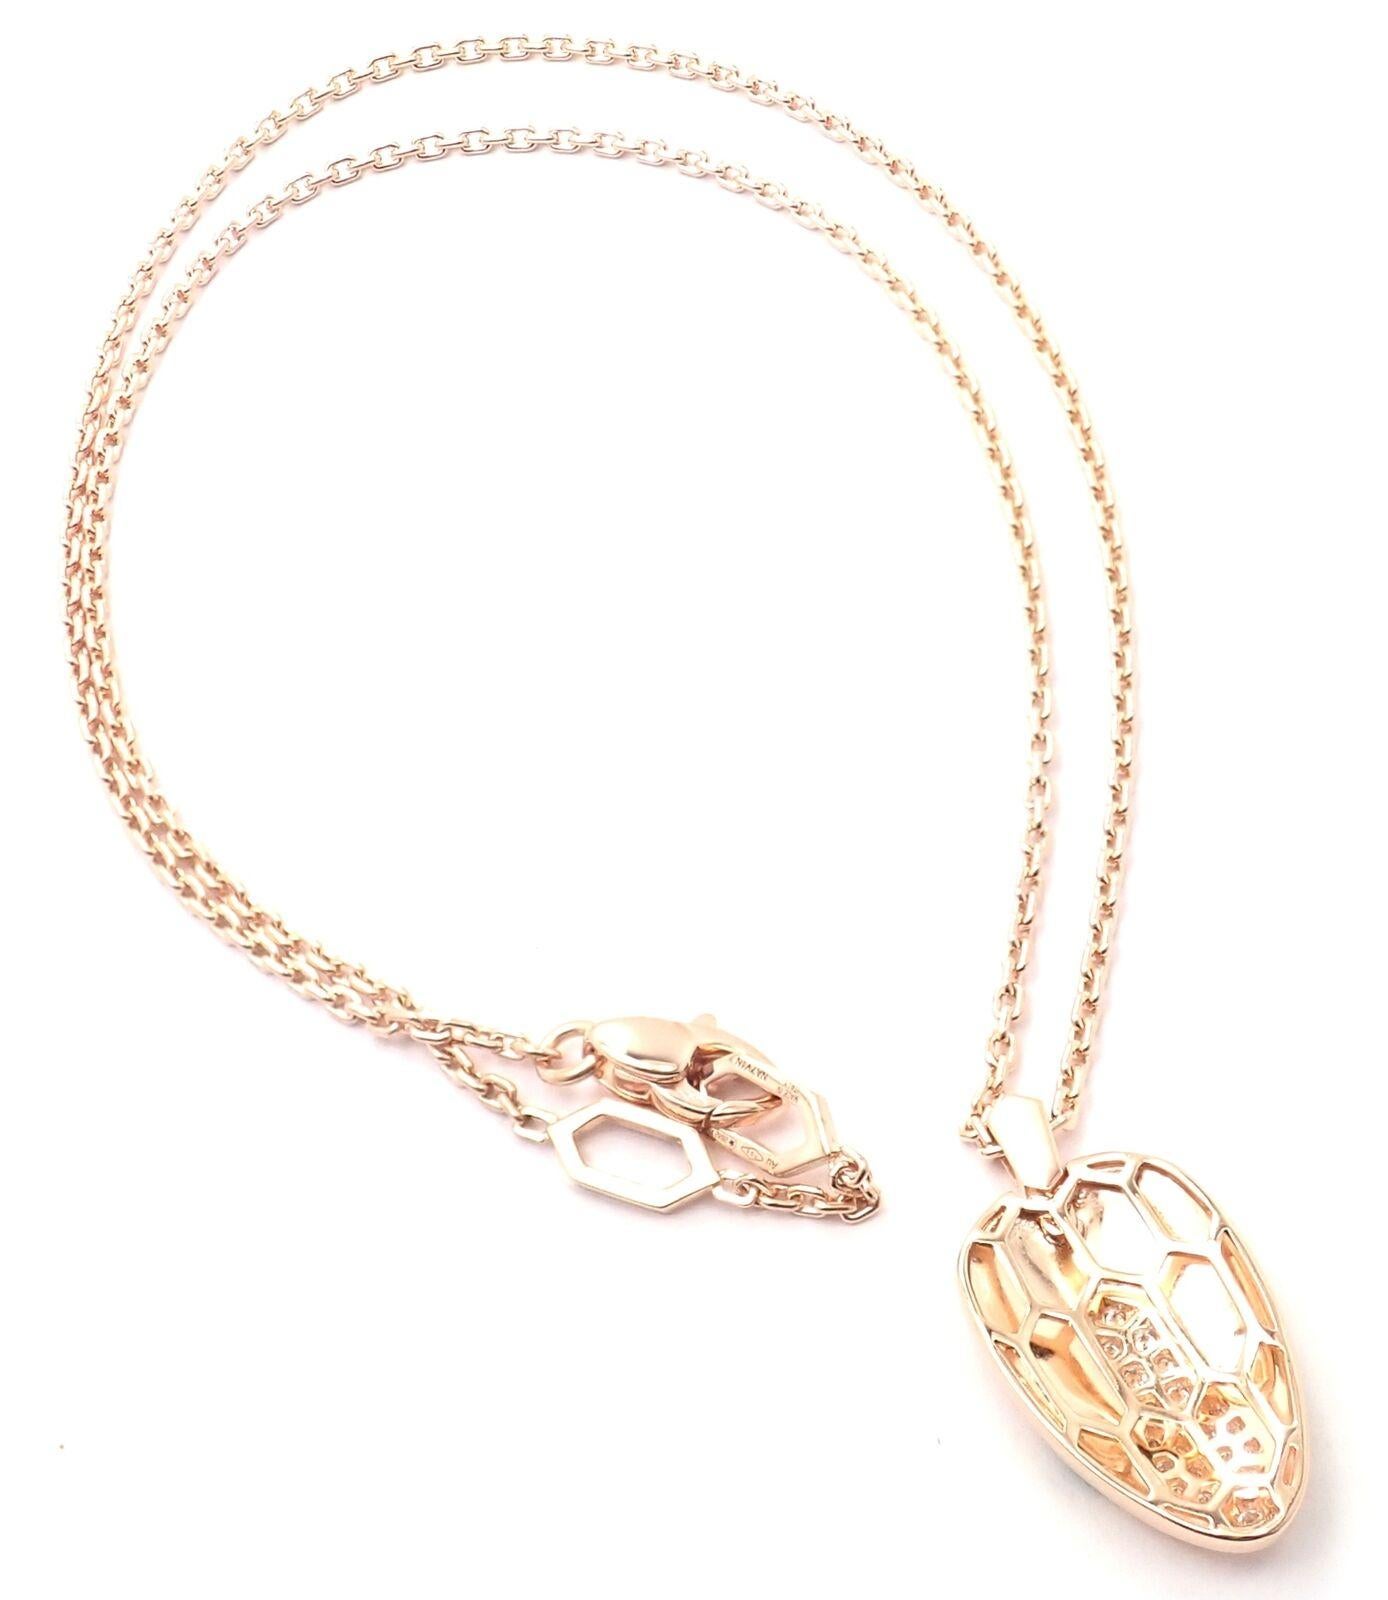 bulgari serpenti necklace diamond price